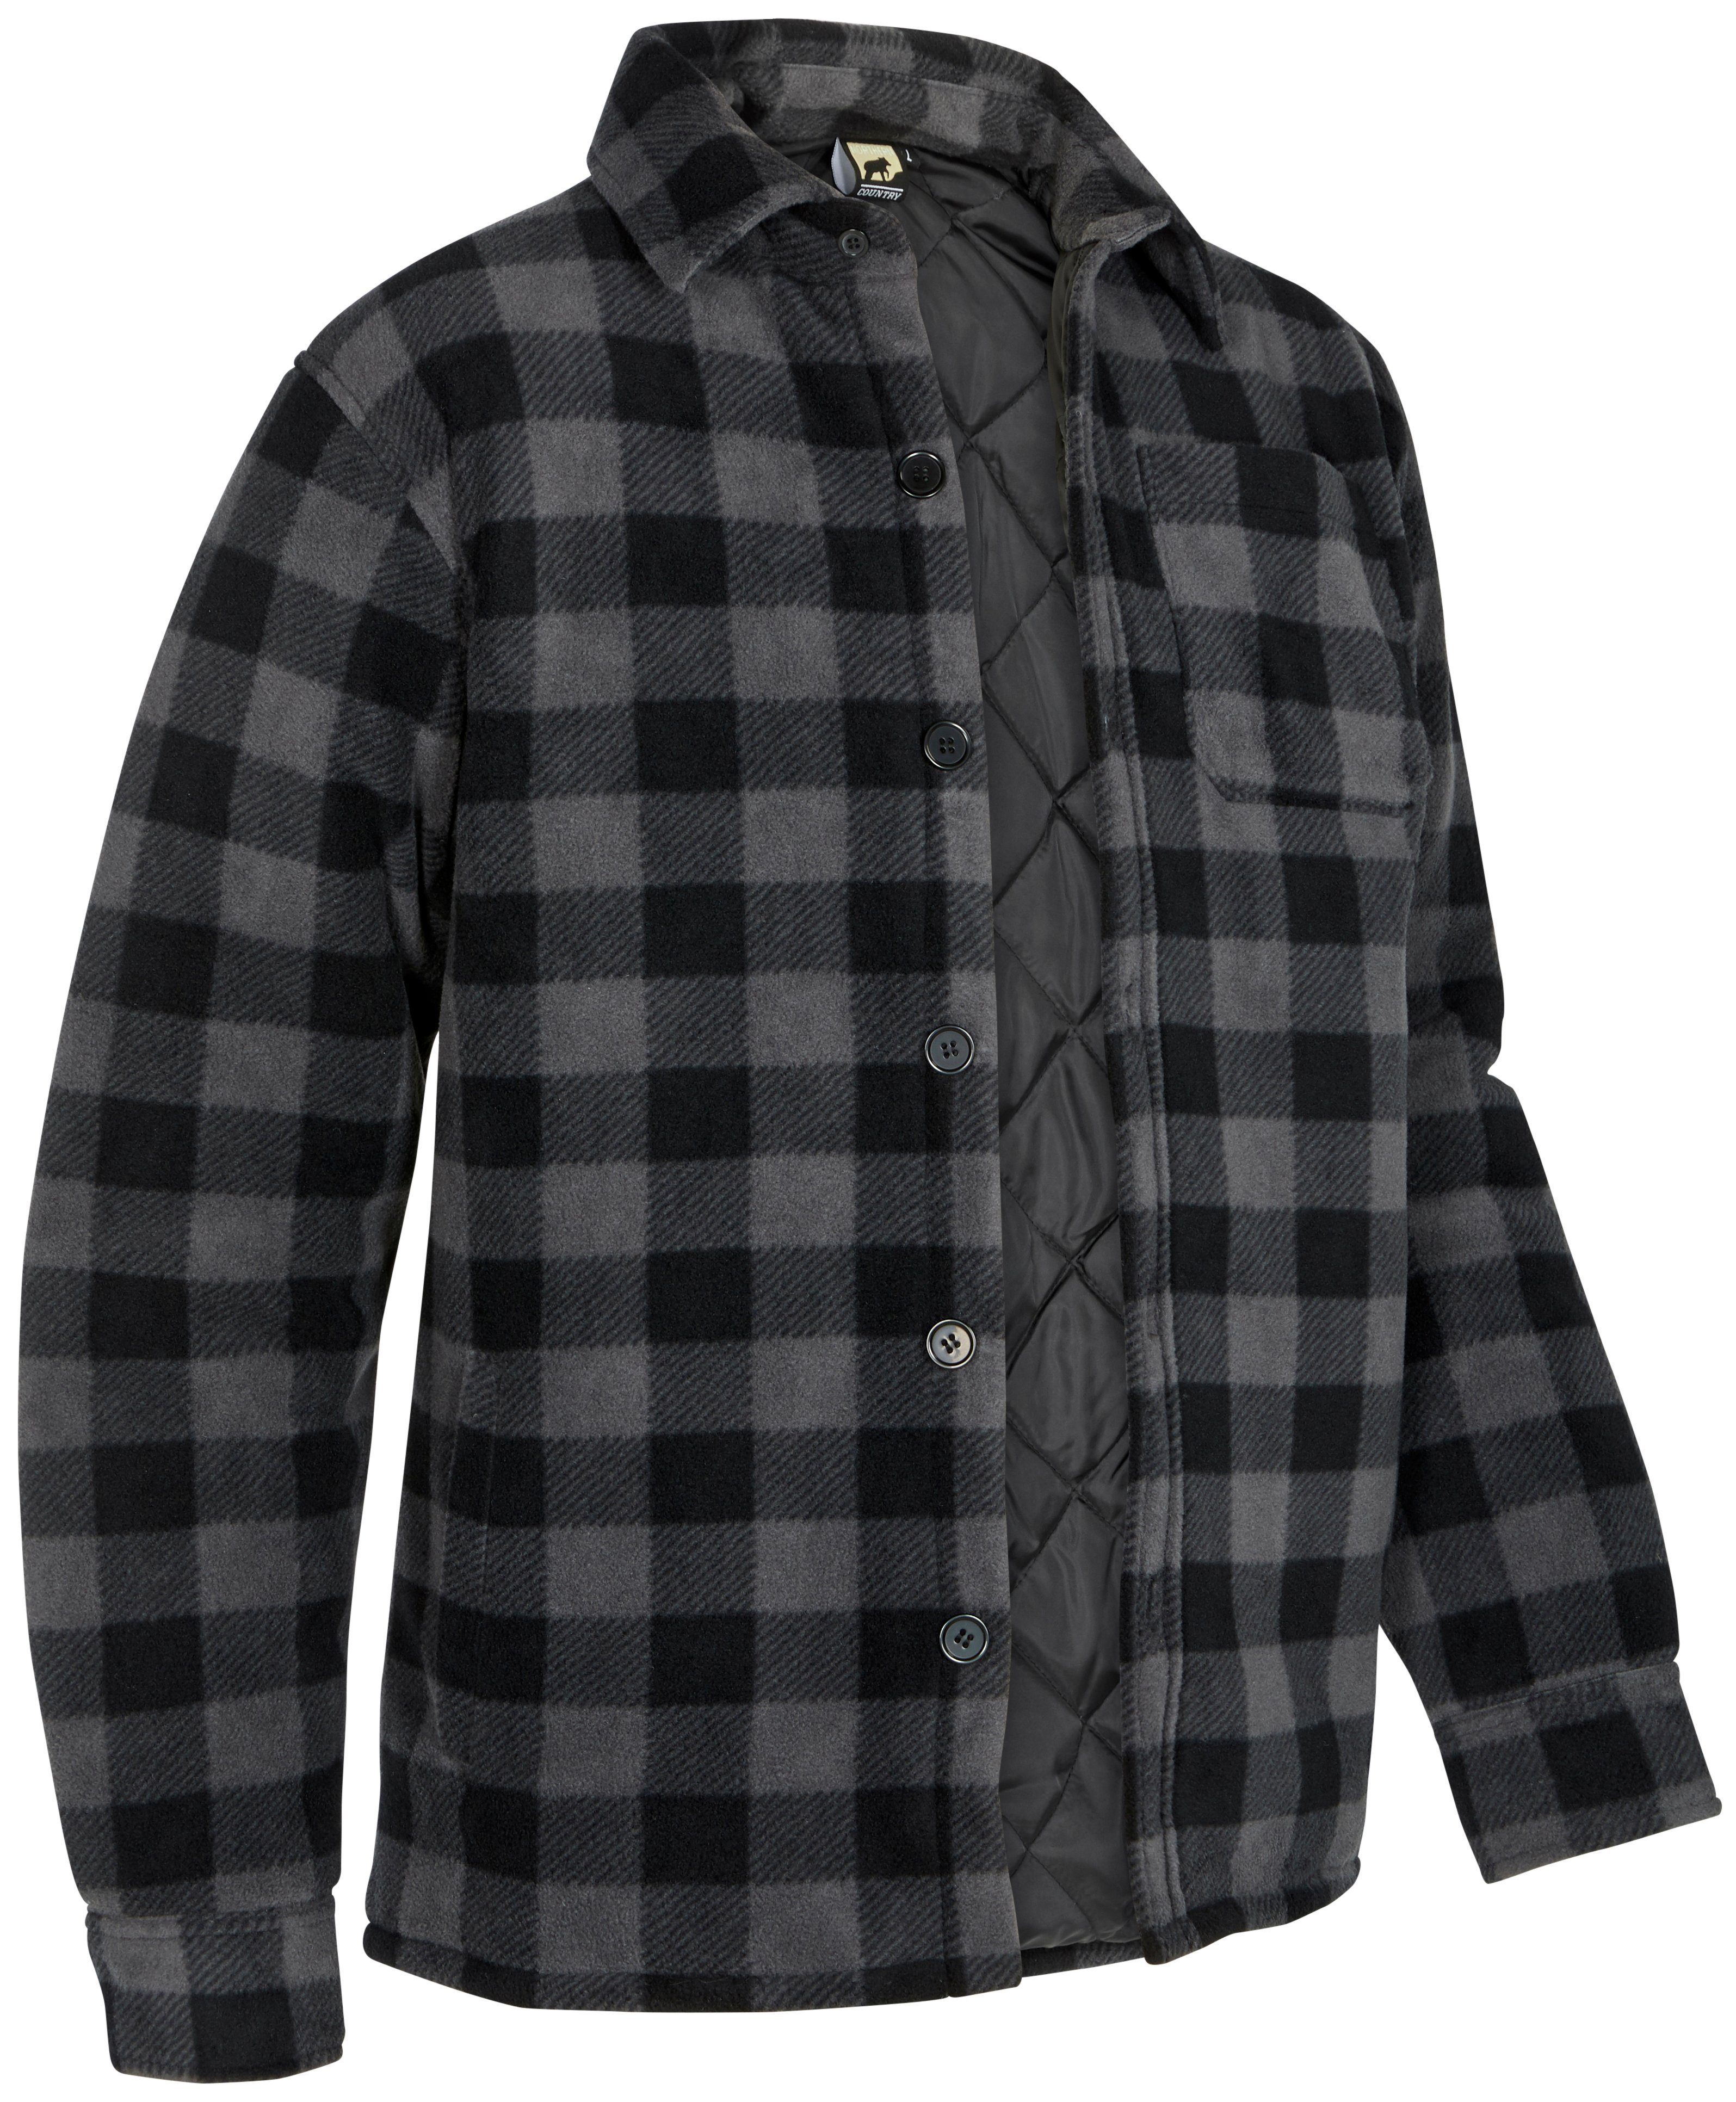 grau-schwarz Country zu Flanellhemd offen (als oder Jacke warm Taschen, tragen) Hemd gefüttert, Rücken, verlängertem mit Northern mit 5 zugeknöpft Flanellstoff